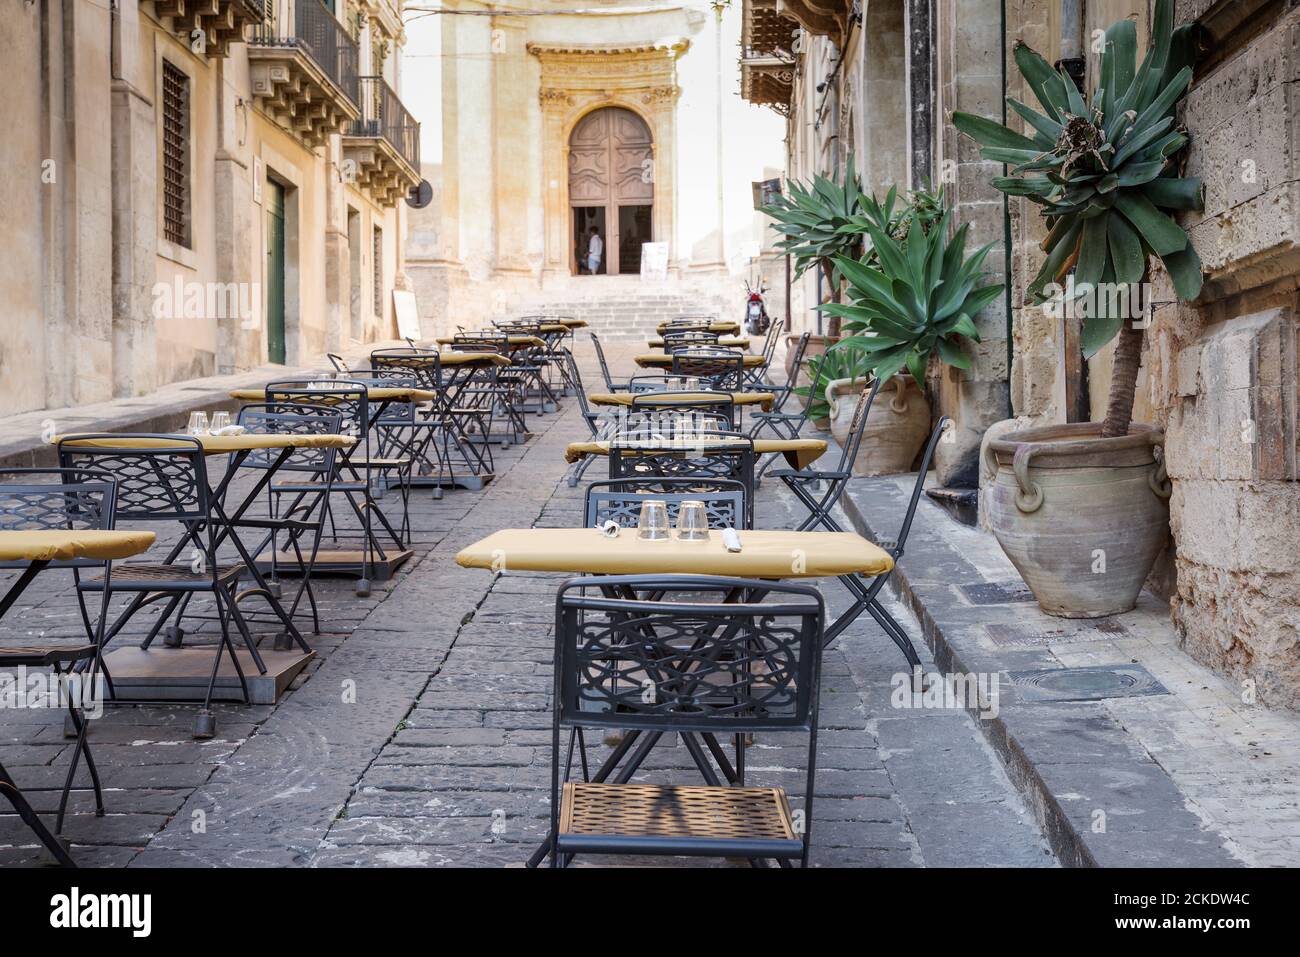 Hübsches Café mit Sitzgelegenheiten im Freien vor der Chiesa di Montevergine (auch bekannt als San Girolamo), einer barocken römisch-katholischen Kirche in Noto - Sizilien, Italien Stockfoto